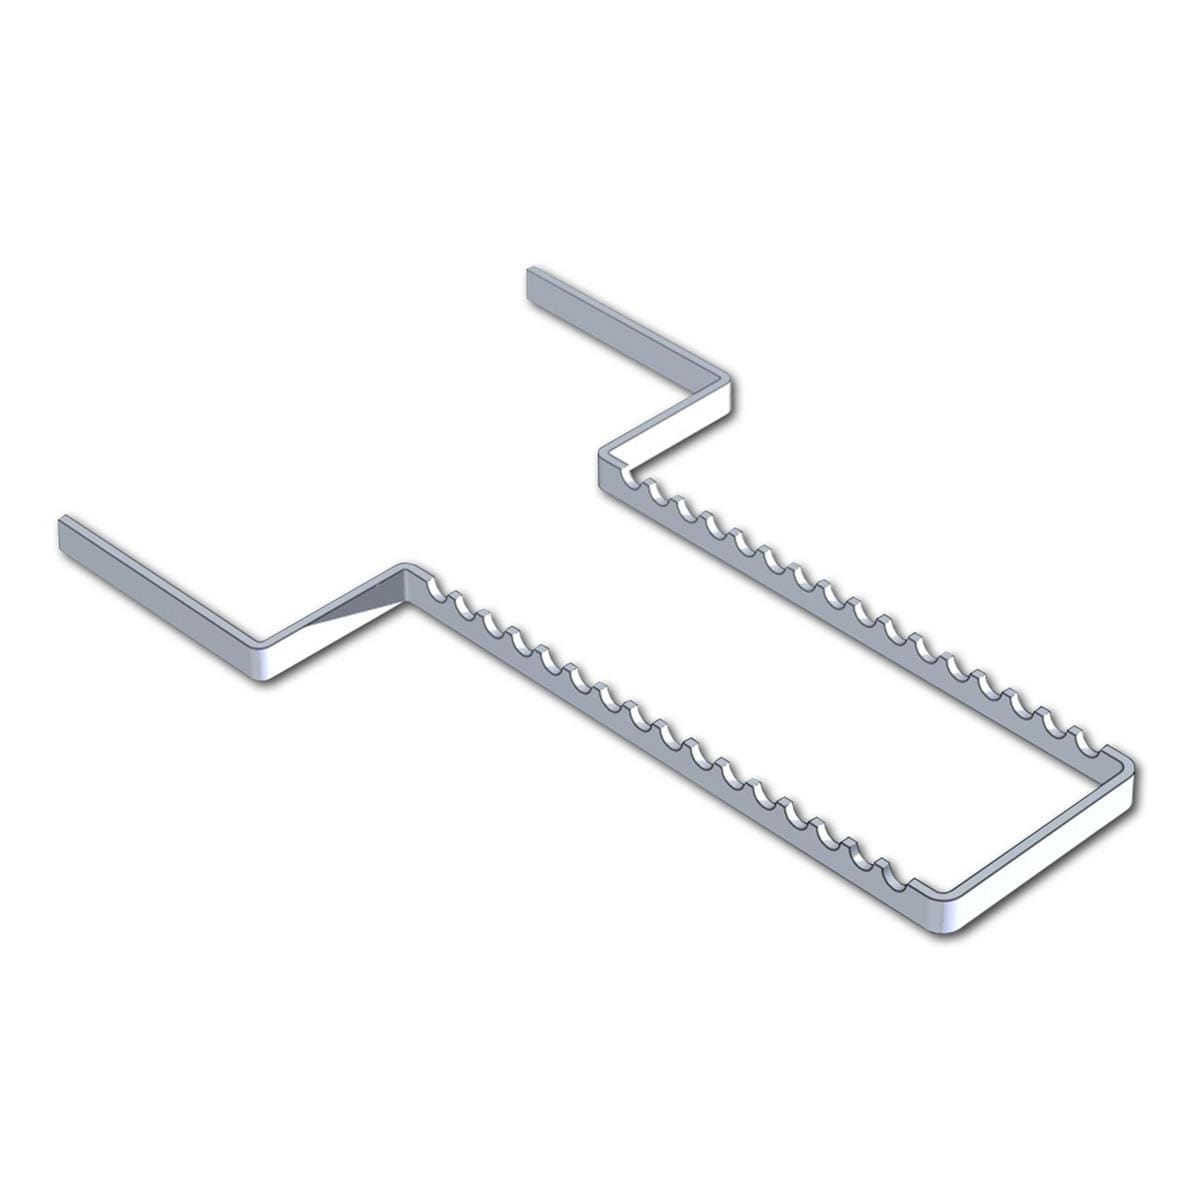 Aluminium Tray porte-instruments - pour plateau 28 x 18 cm (16 instruments), argent